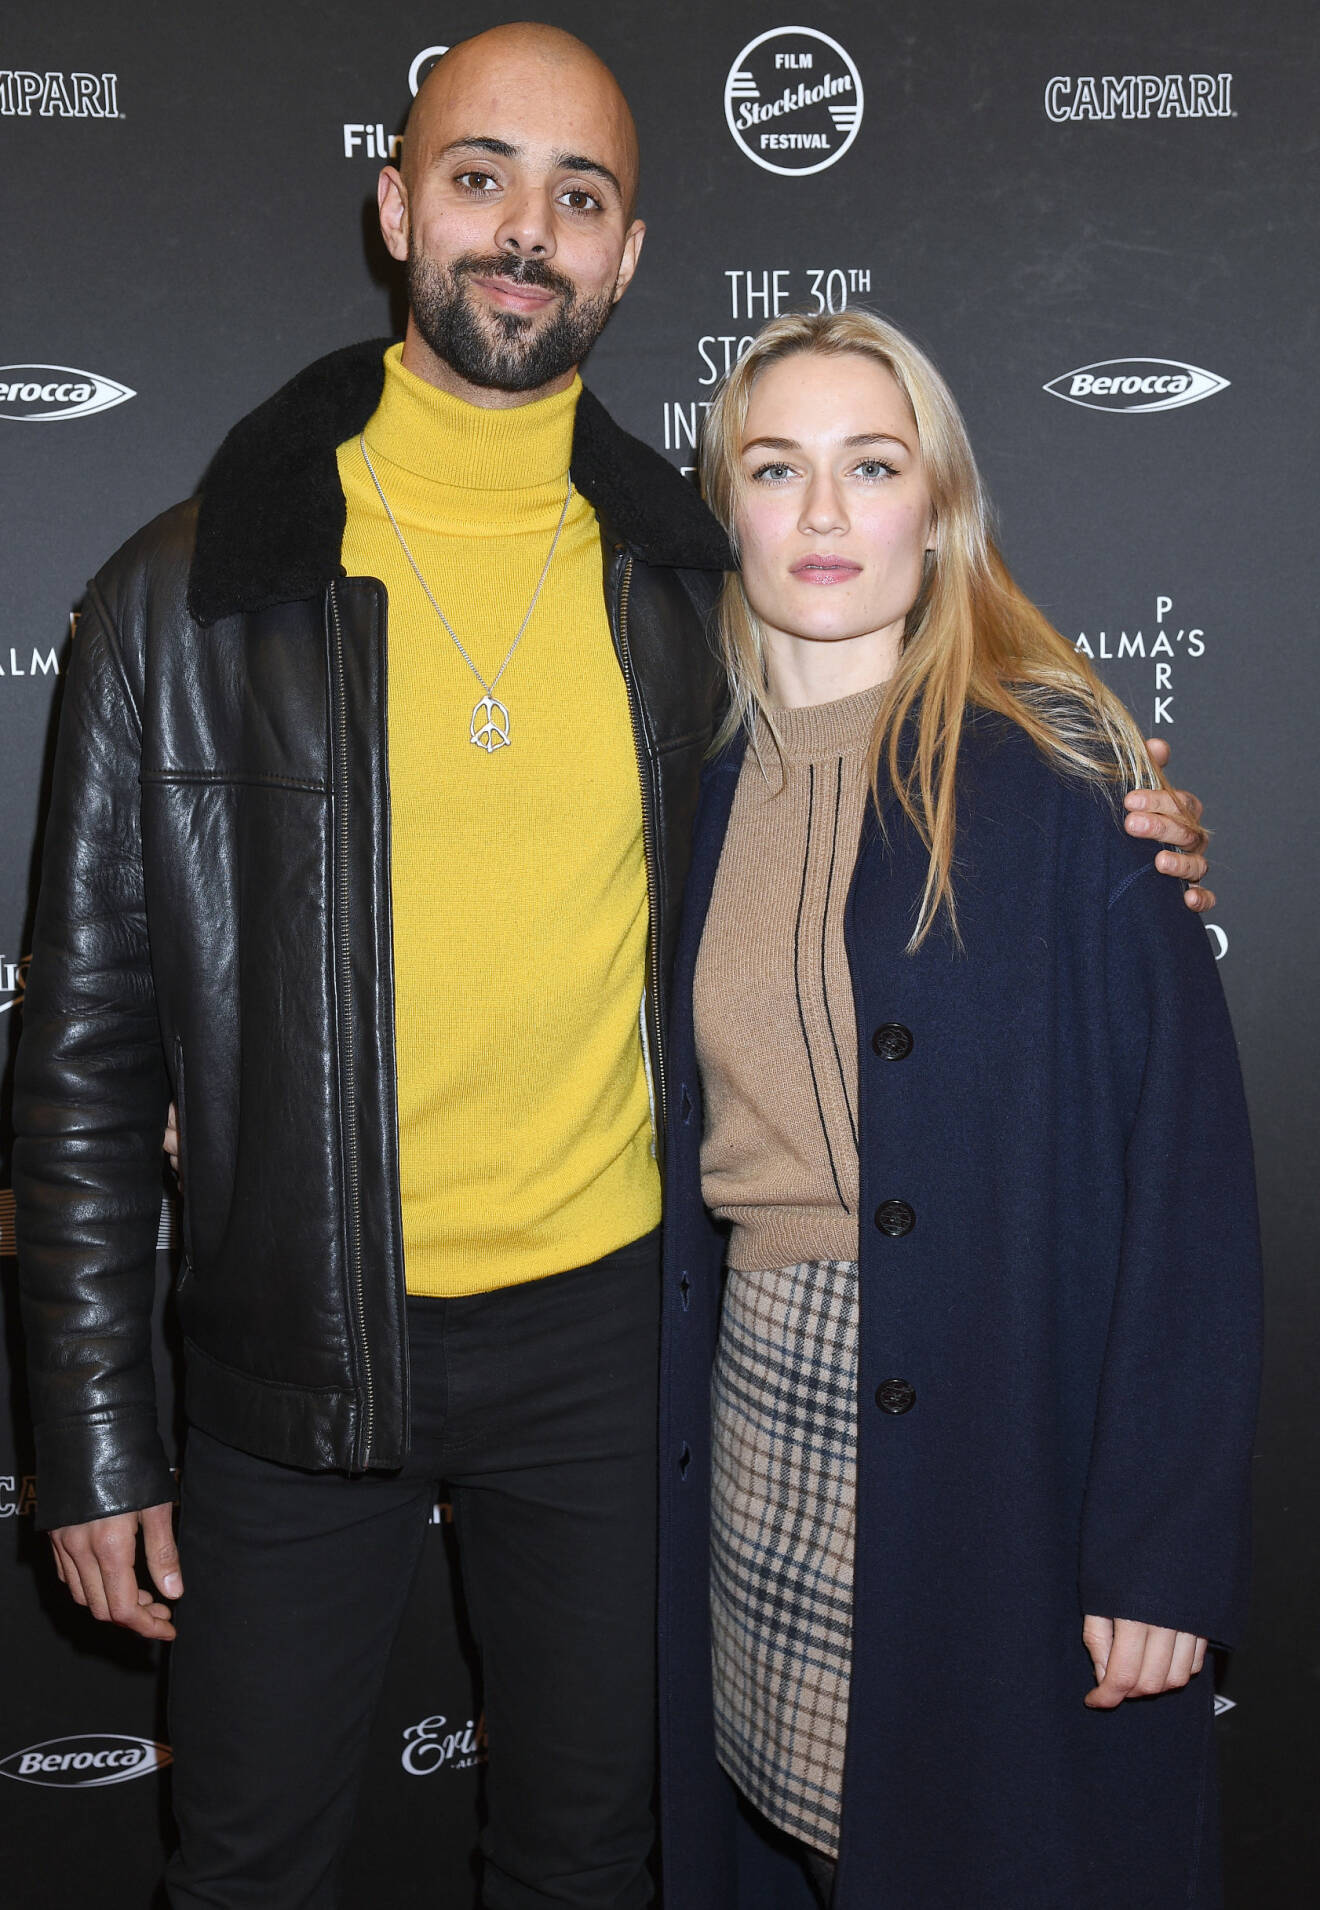 Skådespelarparet Alexander Salzberger och Disa Östrand håller om varandra vid invigning av Stockholms filmfestival.